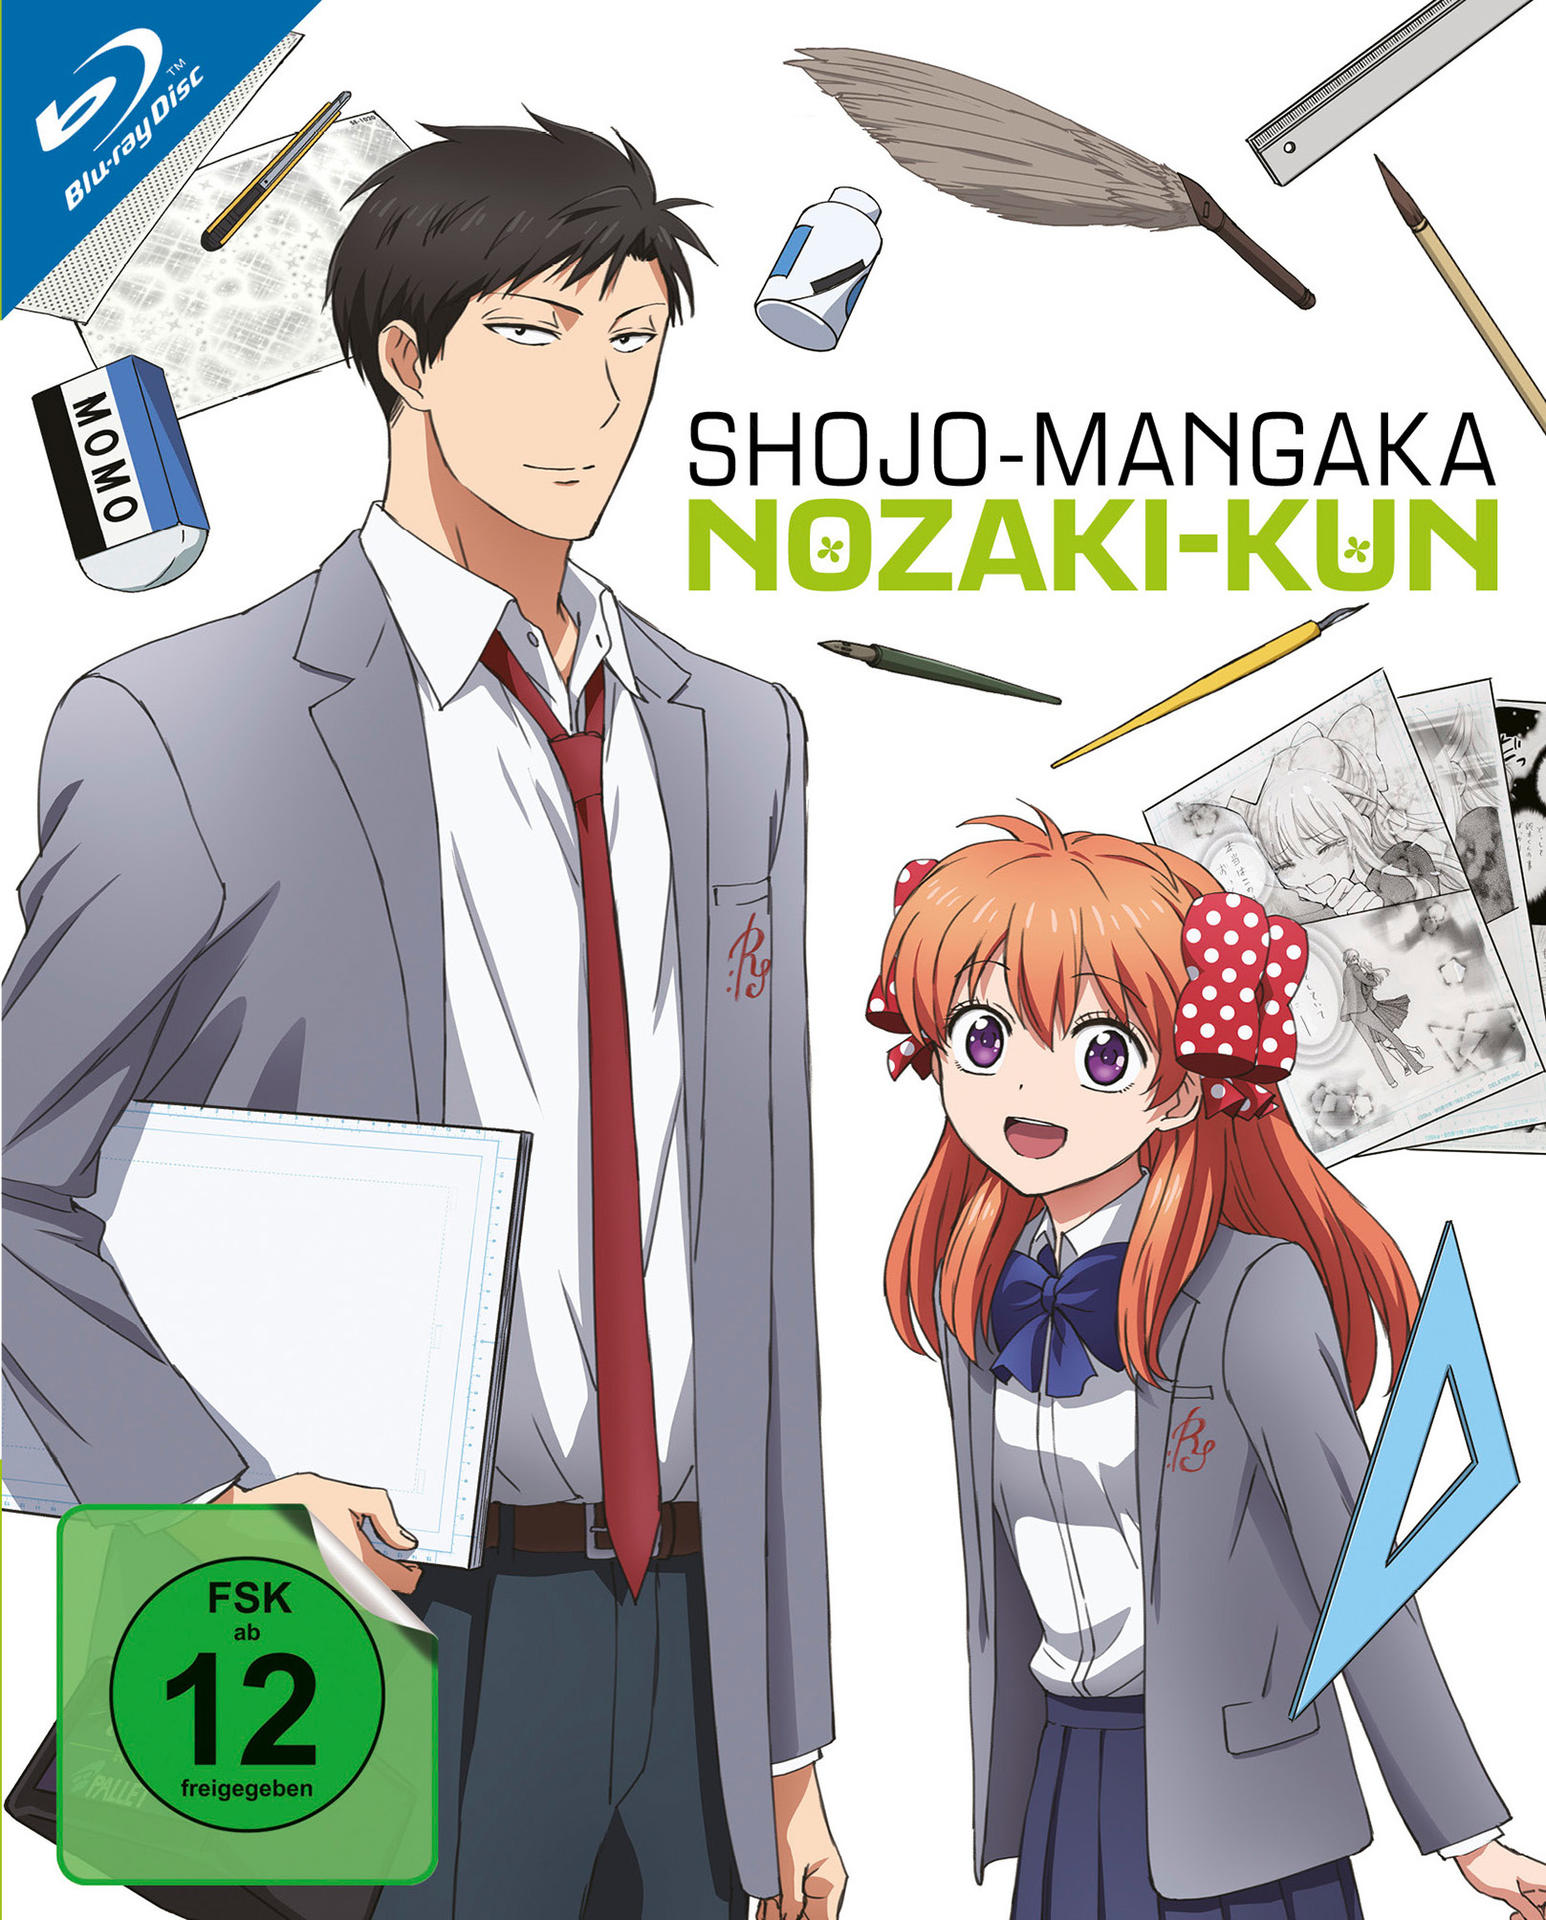 Shojo-Mangaka Nozaki-Kun Vol. 1 1-4) (Ep. Blu-ray